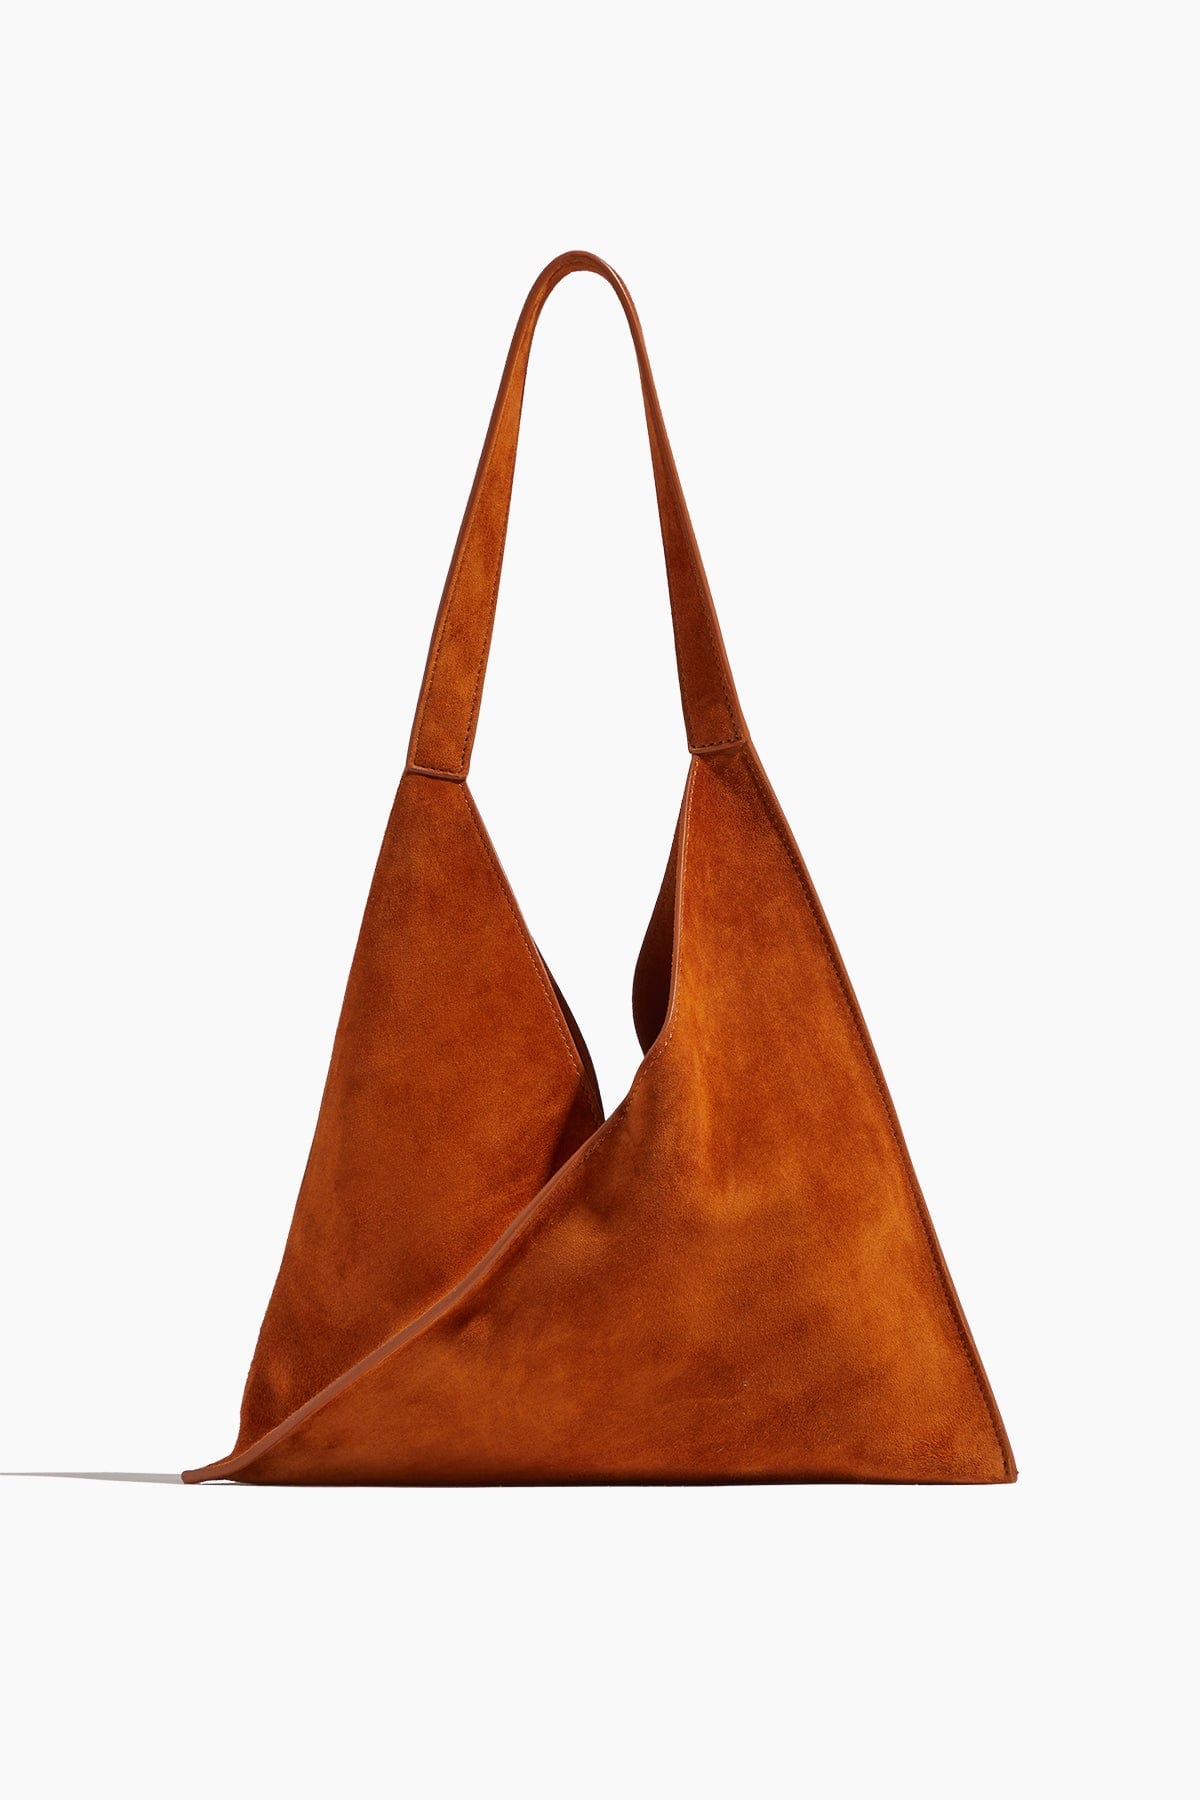 Khaite Shoulder Bags Sara Small Tote Bag in Caramel